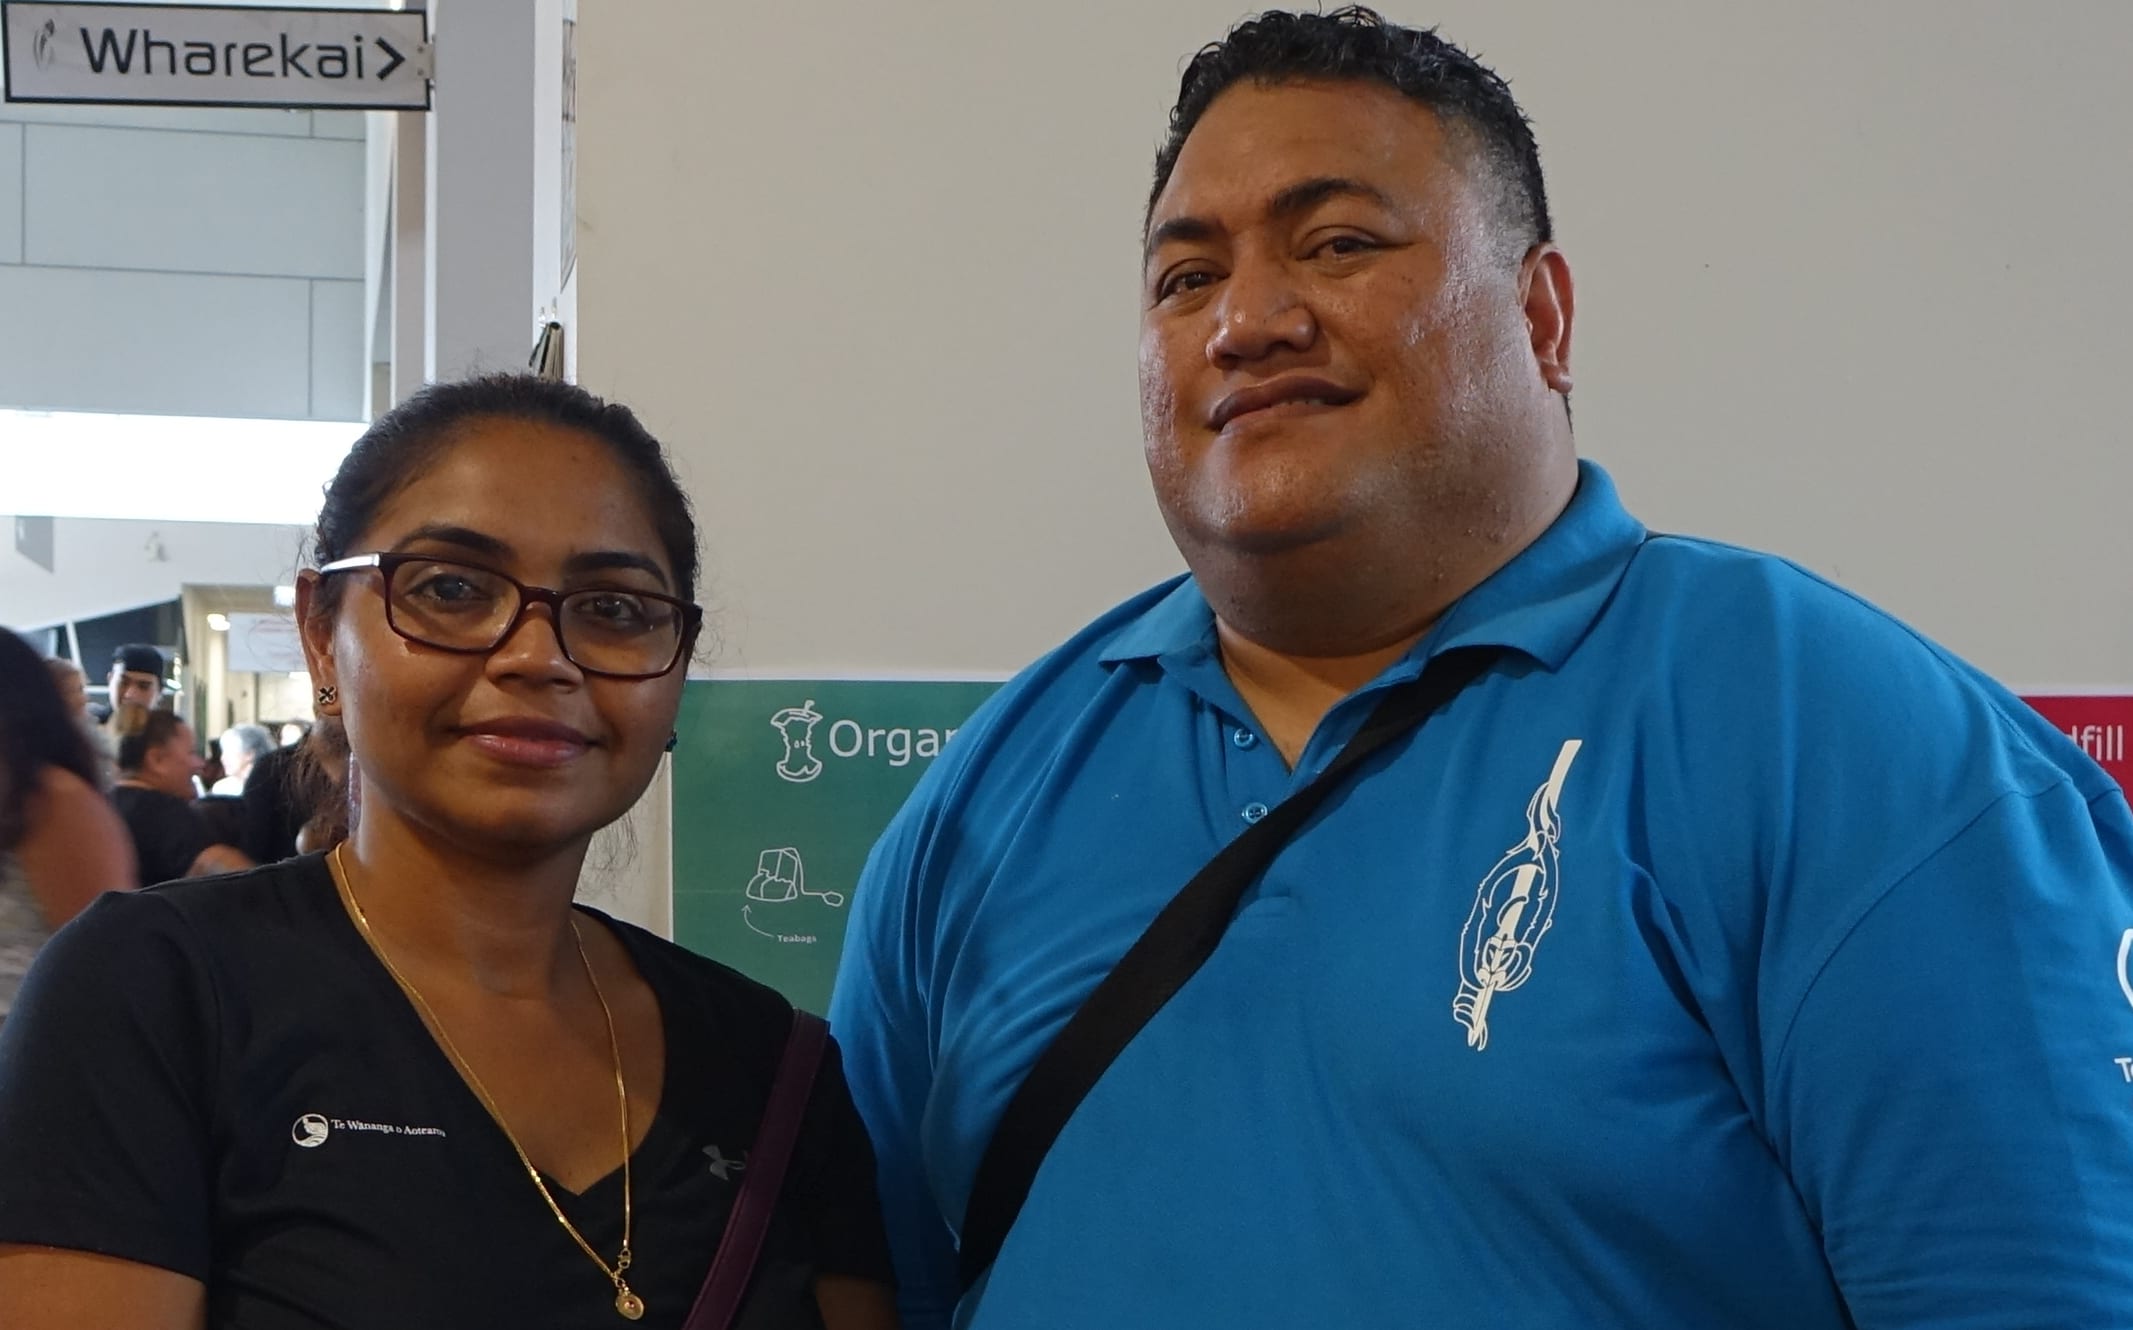 Te Wananga colleagues Anjina Devi and Rex Matenga both completed the te reo Maori program last year.